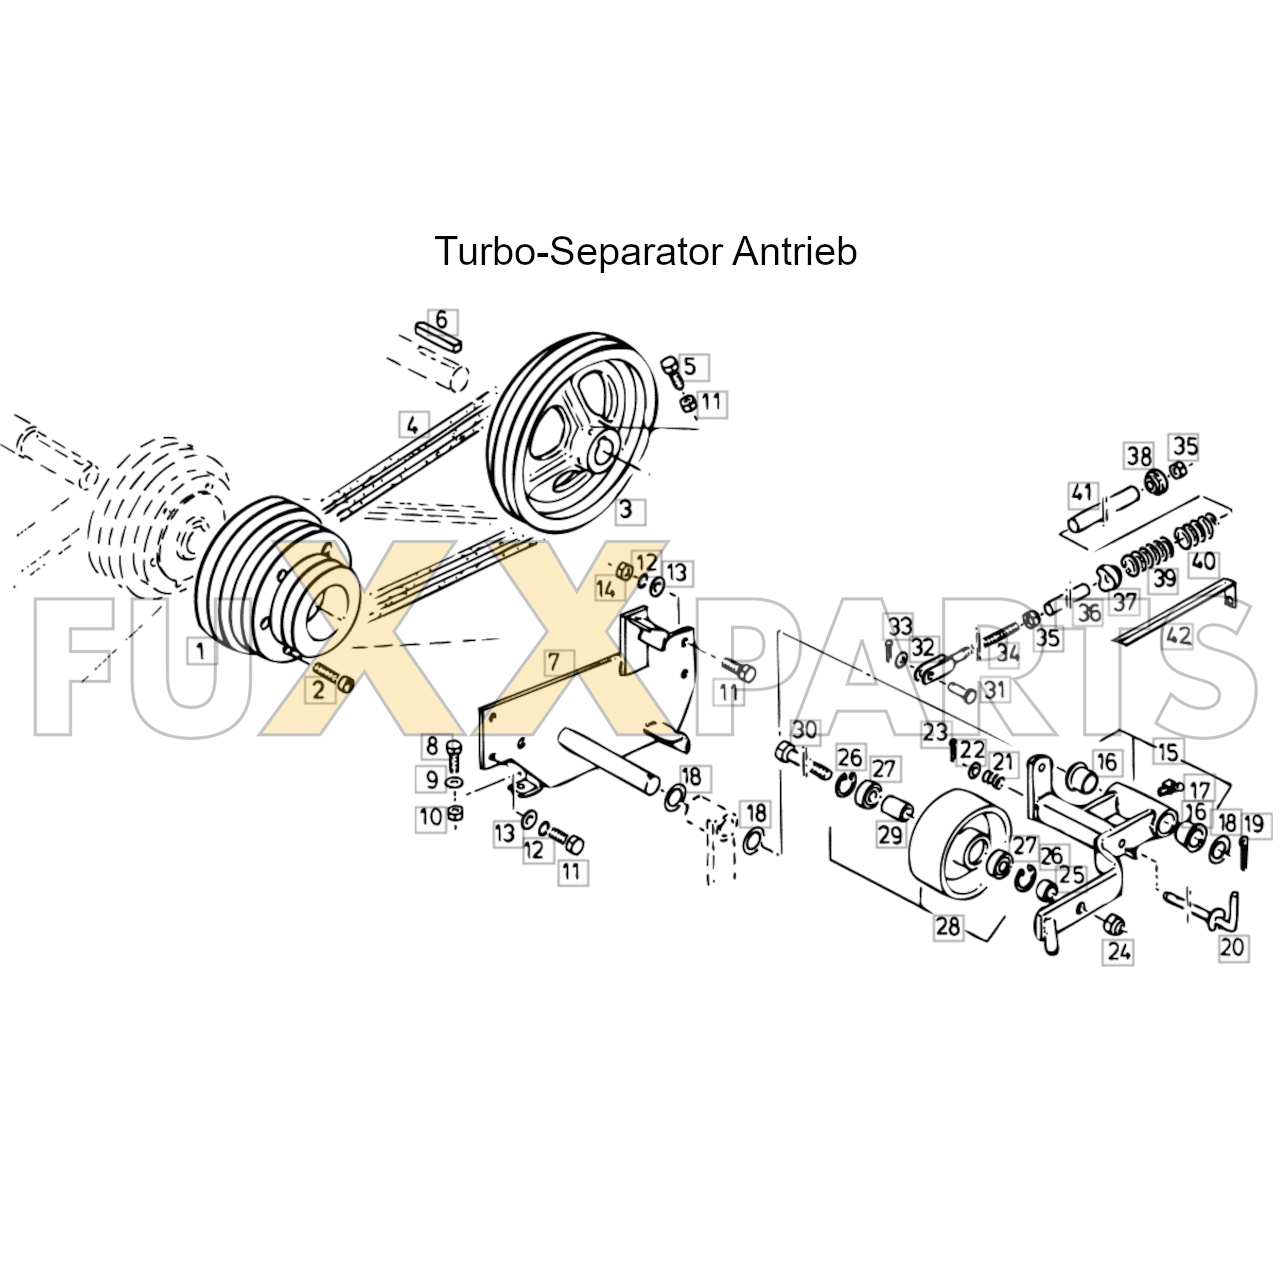 4080 Turbo-Separator Antrieb_copy